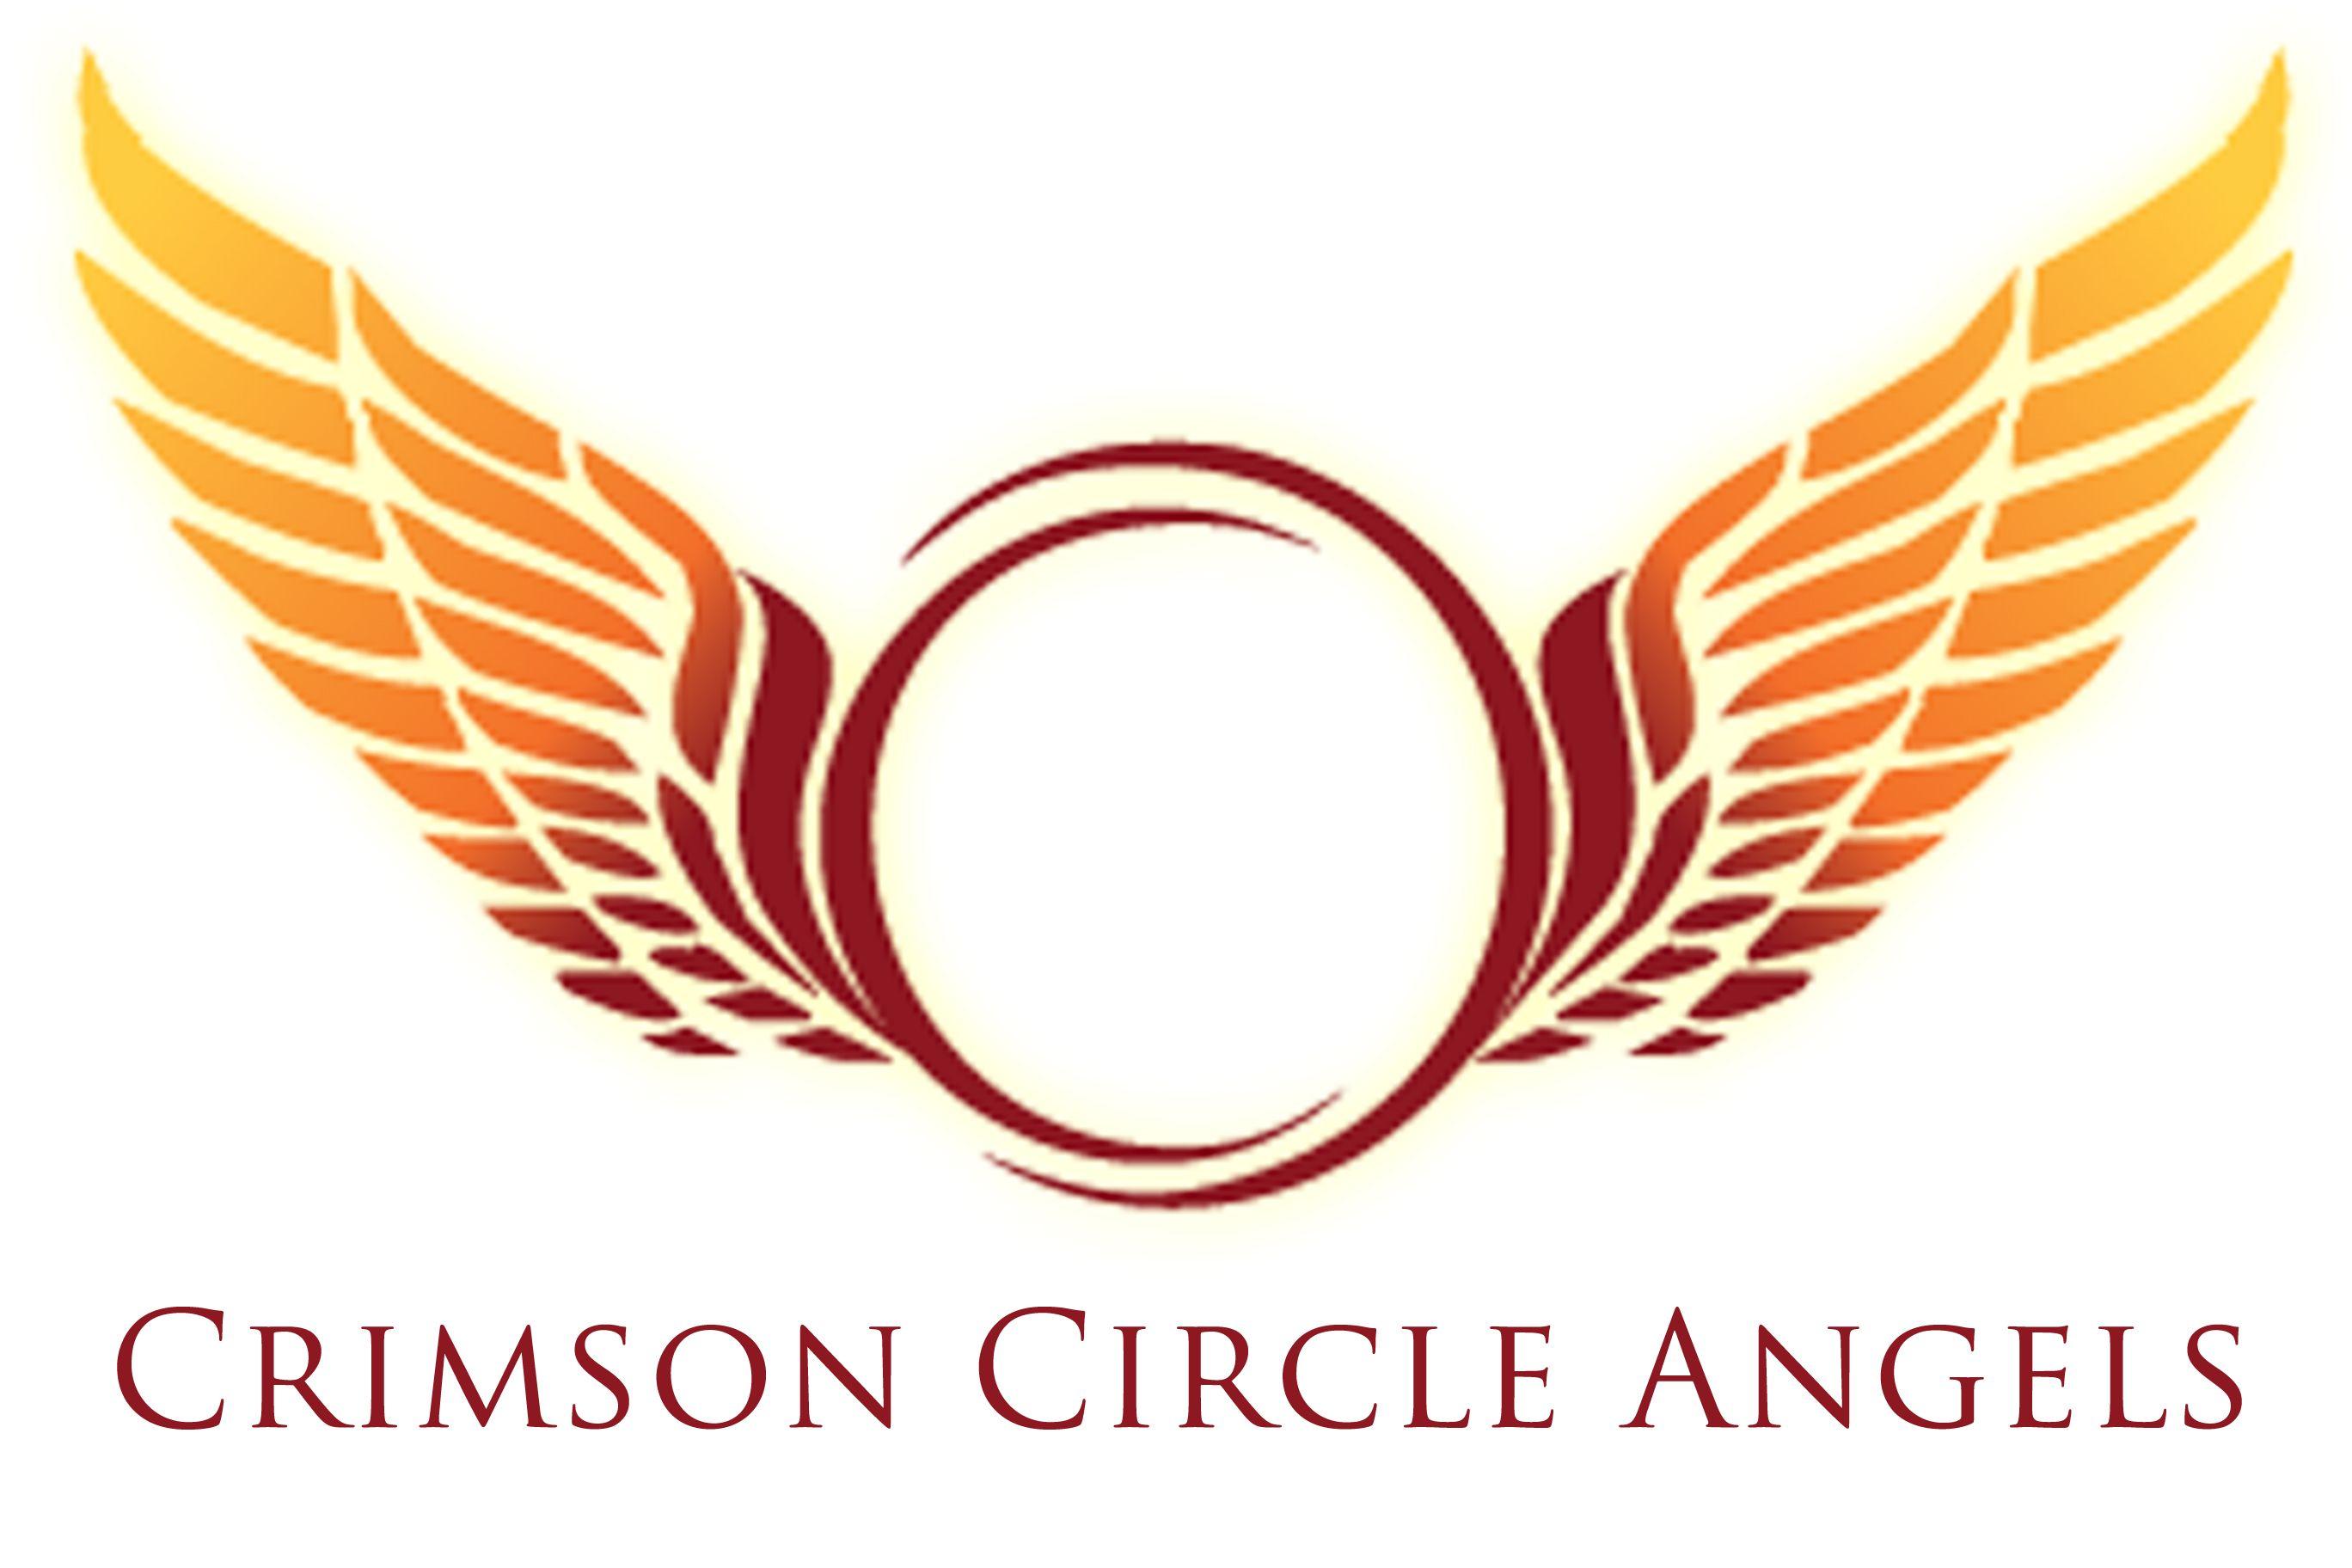 Angel Wings Logo - Free Angel Wings Logo, Download Free Clip Art, Free Clip Art on ...